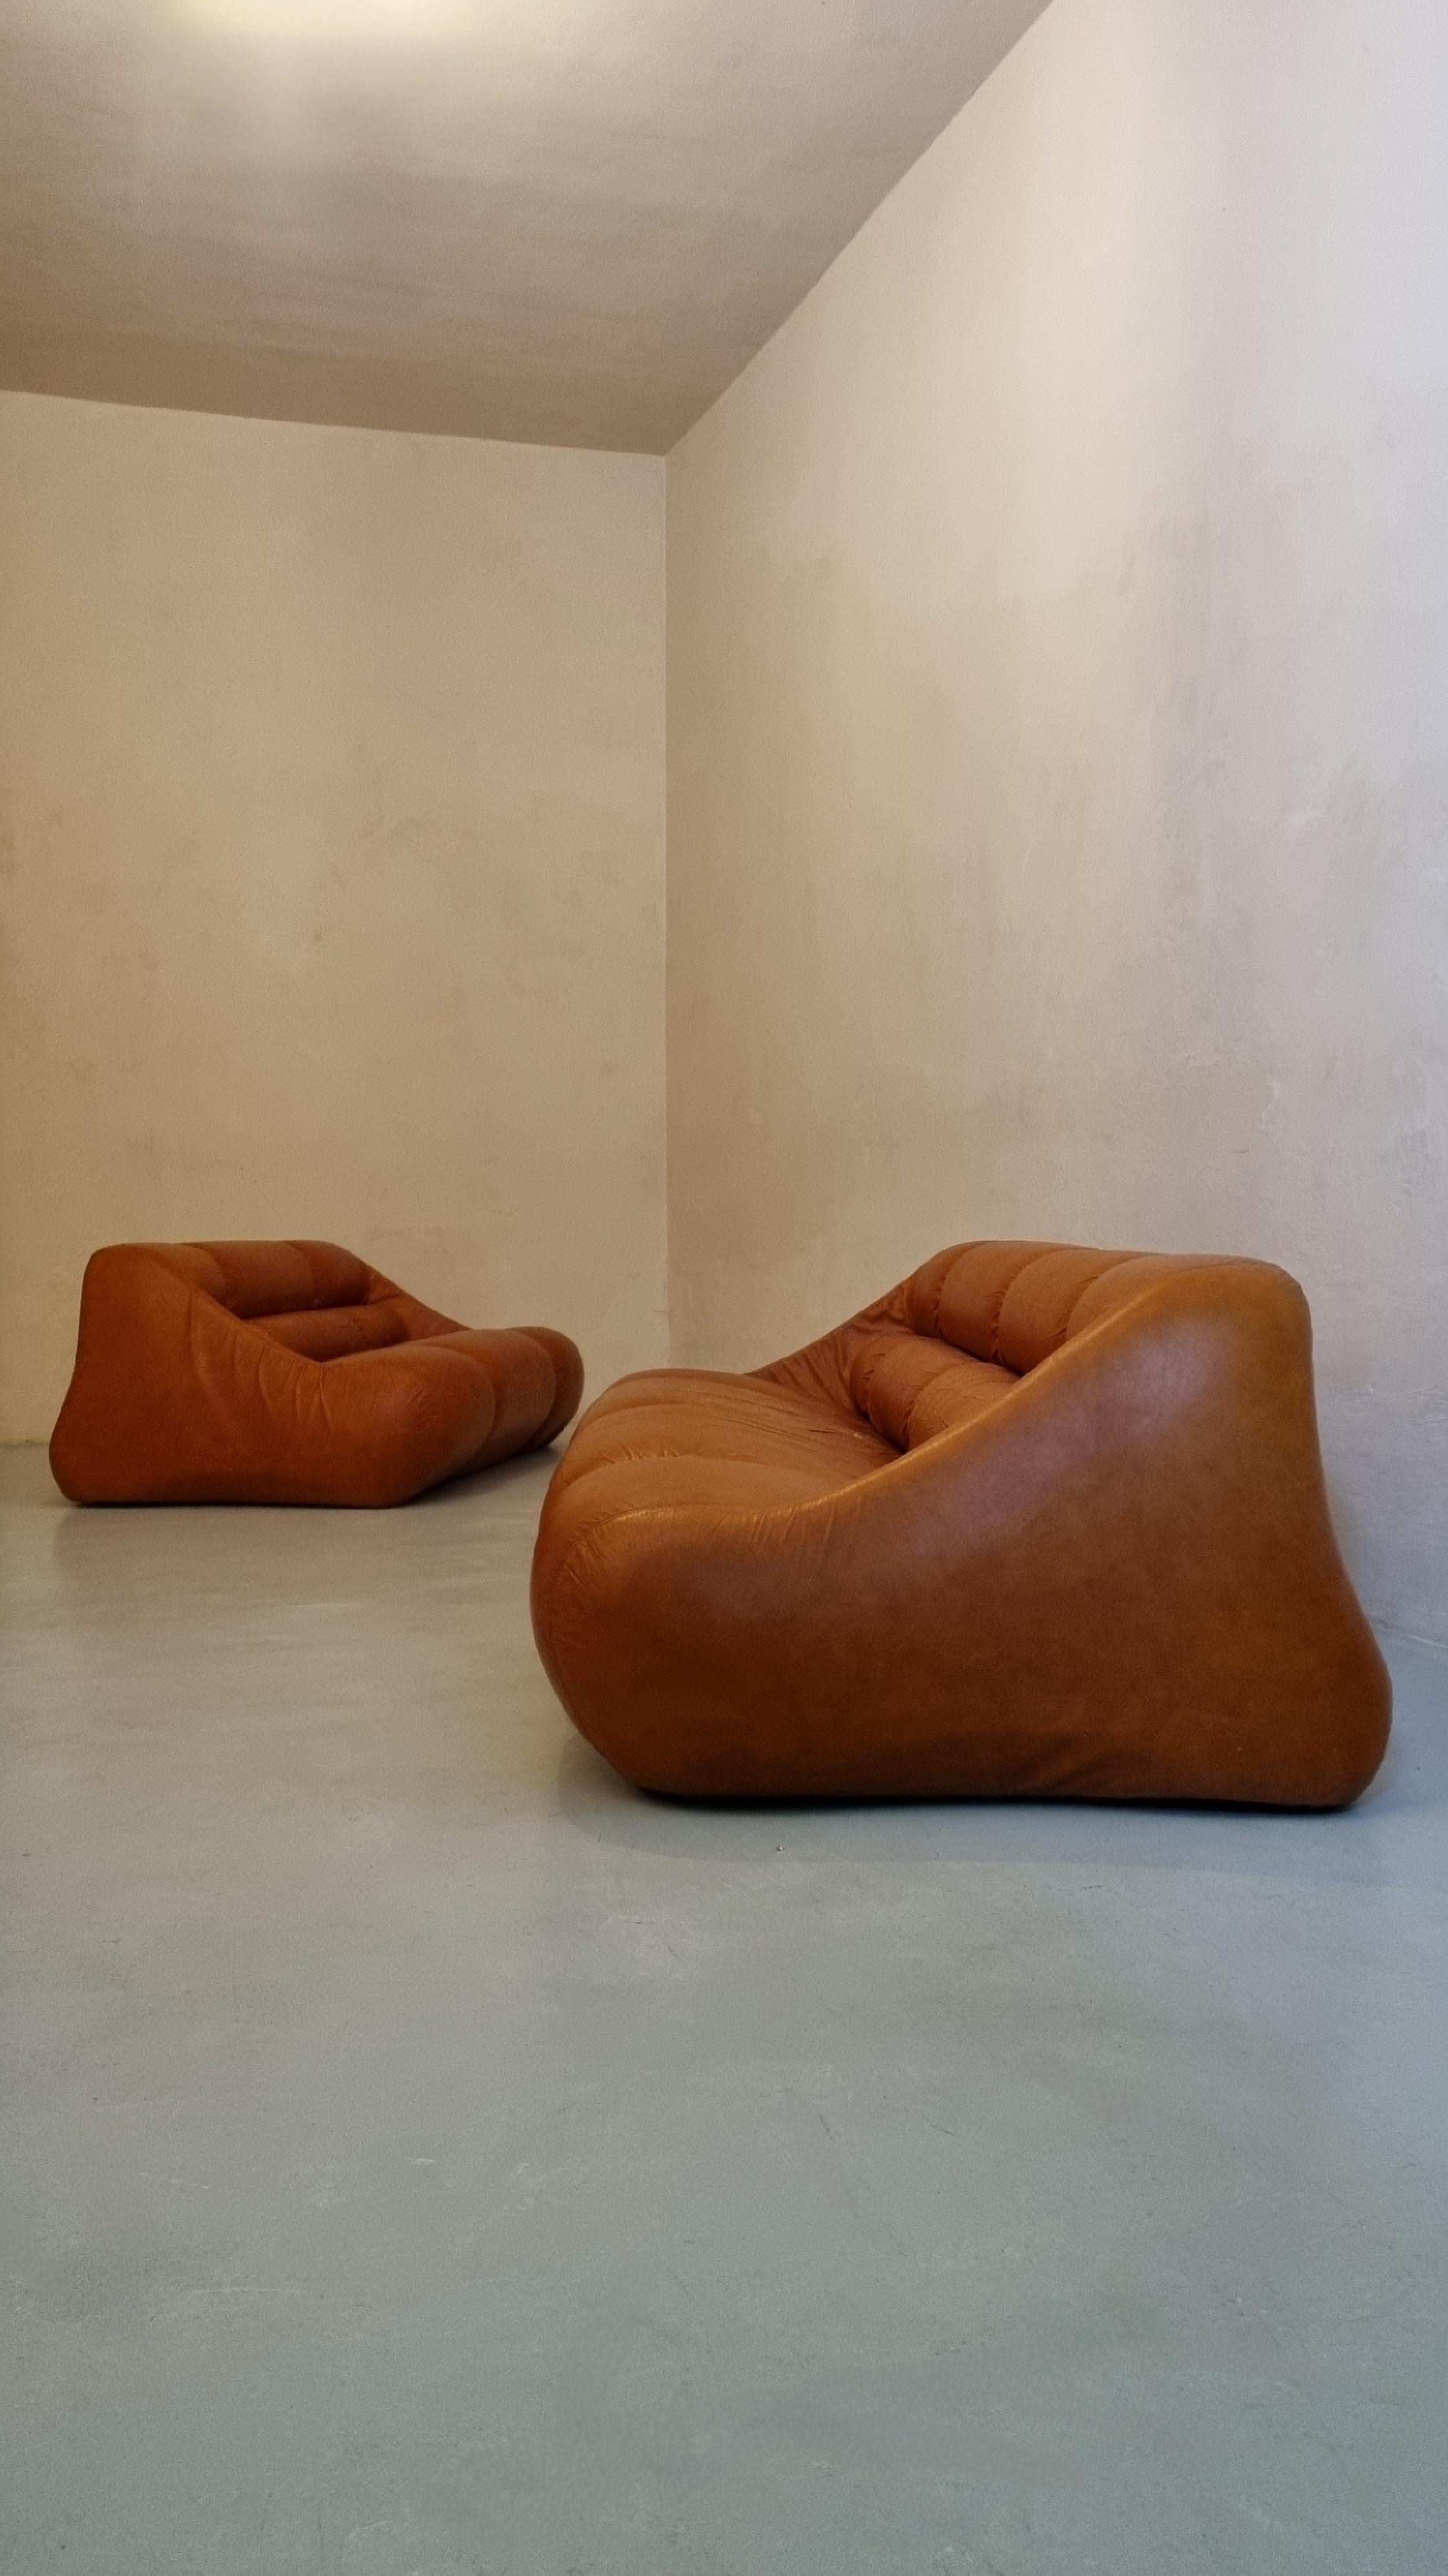 Canapés 3 + 2 places Trio conçus par le trio de designers De Pas D' Urbino & Lomazzi pour BBB Bonacina en 1967.
Padding en mousse de caoutchouc, cuir d'origine, plastique.
Bon état, la peau est légèrement usée au niveau de l'assise.
Jonathan De Pas